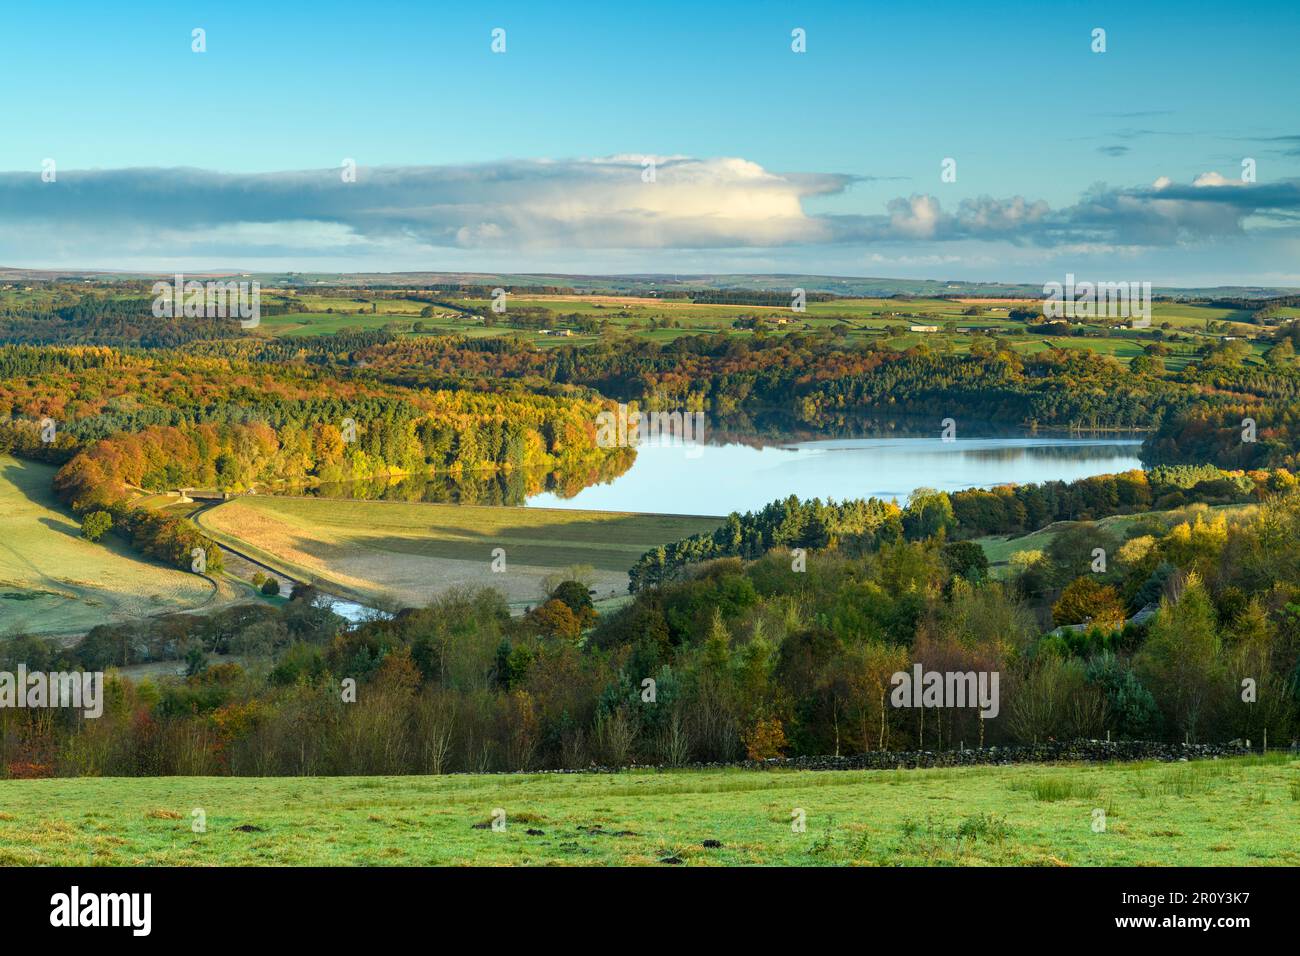 Swinsty Reservoir Sunlight (longue distance, arbres colorés sur les collines, eau calme, matin ensoleillé, ciel bleu) - Washburn Valley, Yorkshire Angleterre Royaume-Uni. Banque D'Images